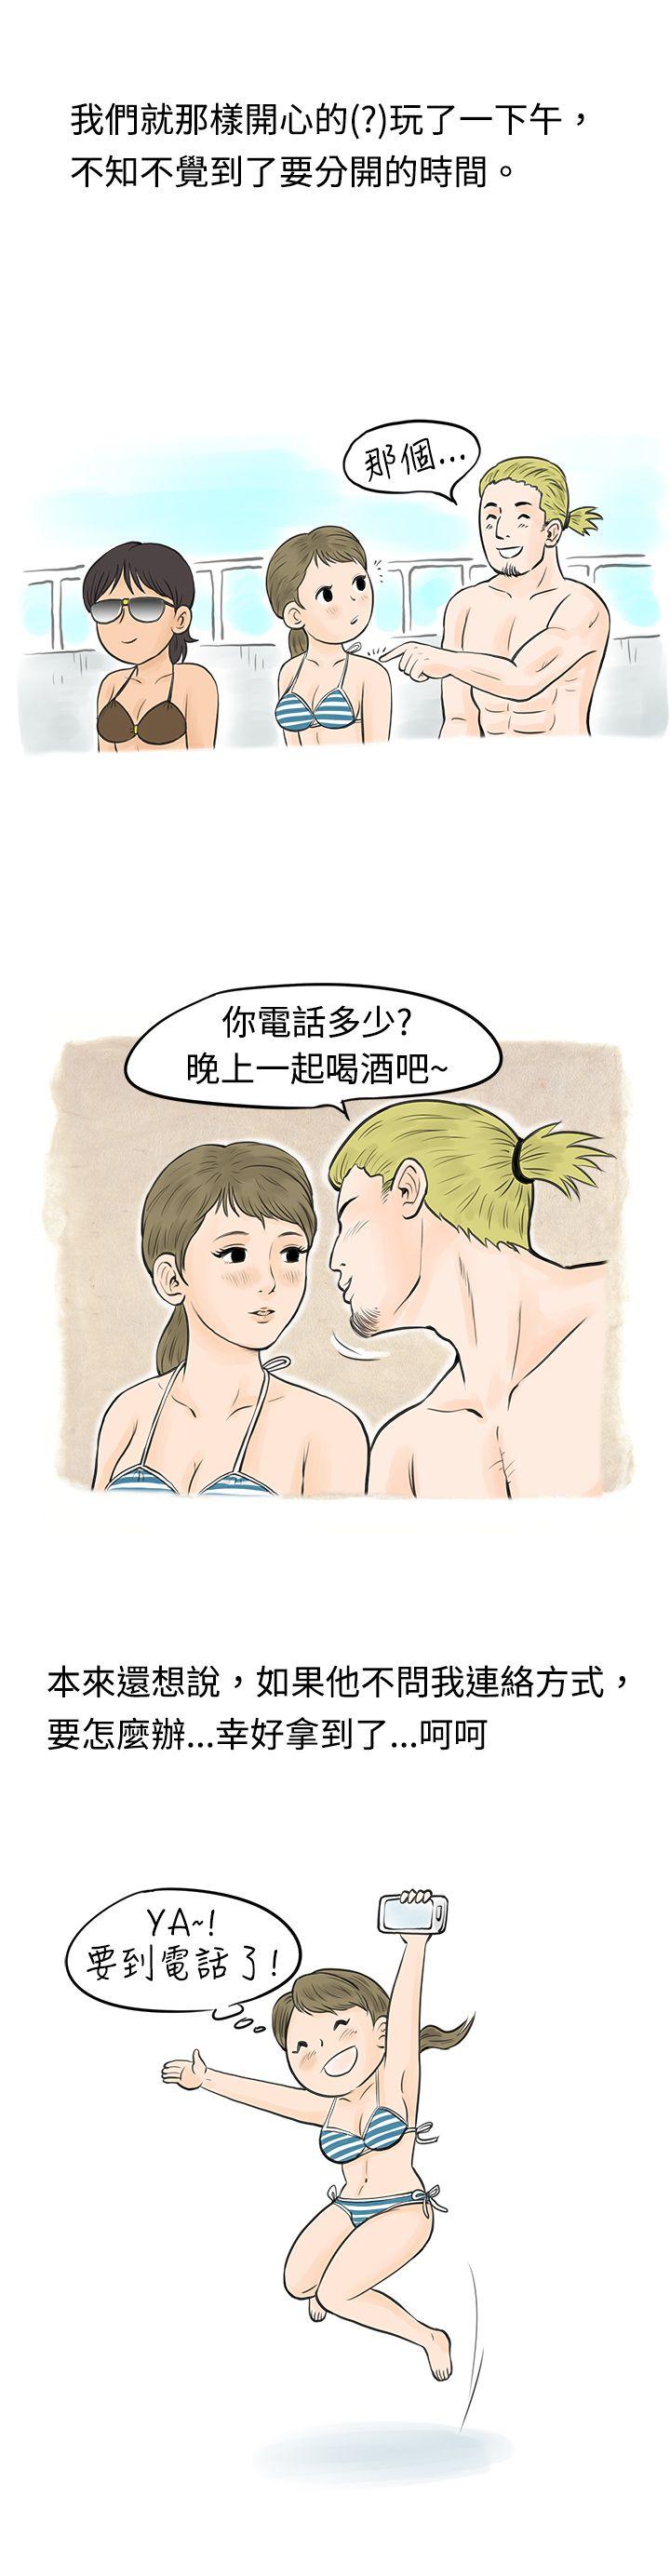 秘密Story  在梨泰院游泳池中的小故事(下) 漫画图片4.jpg